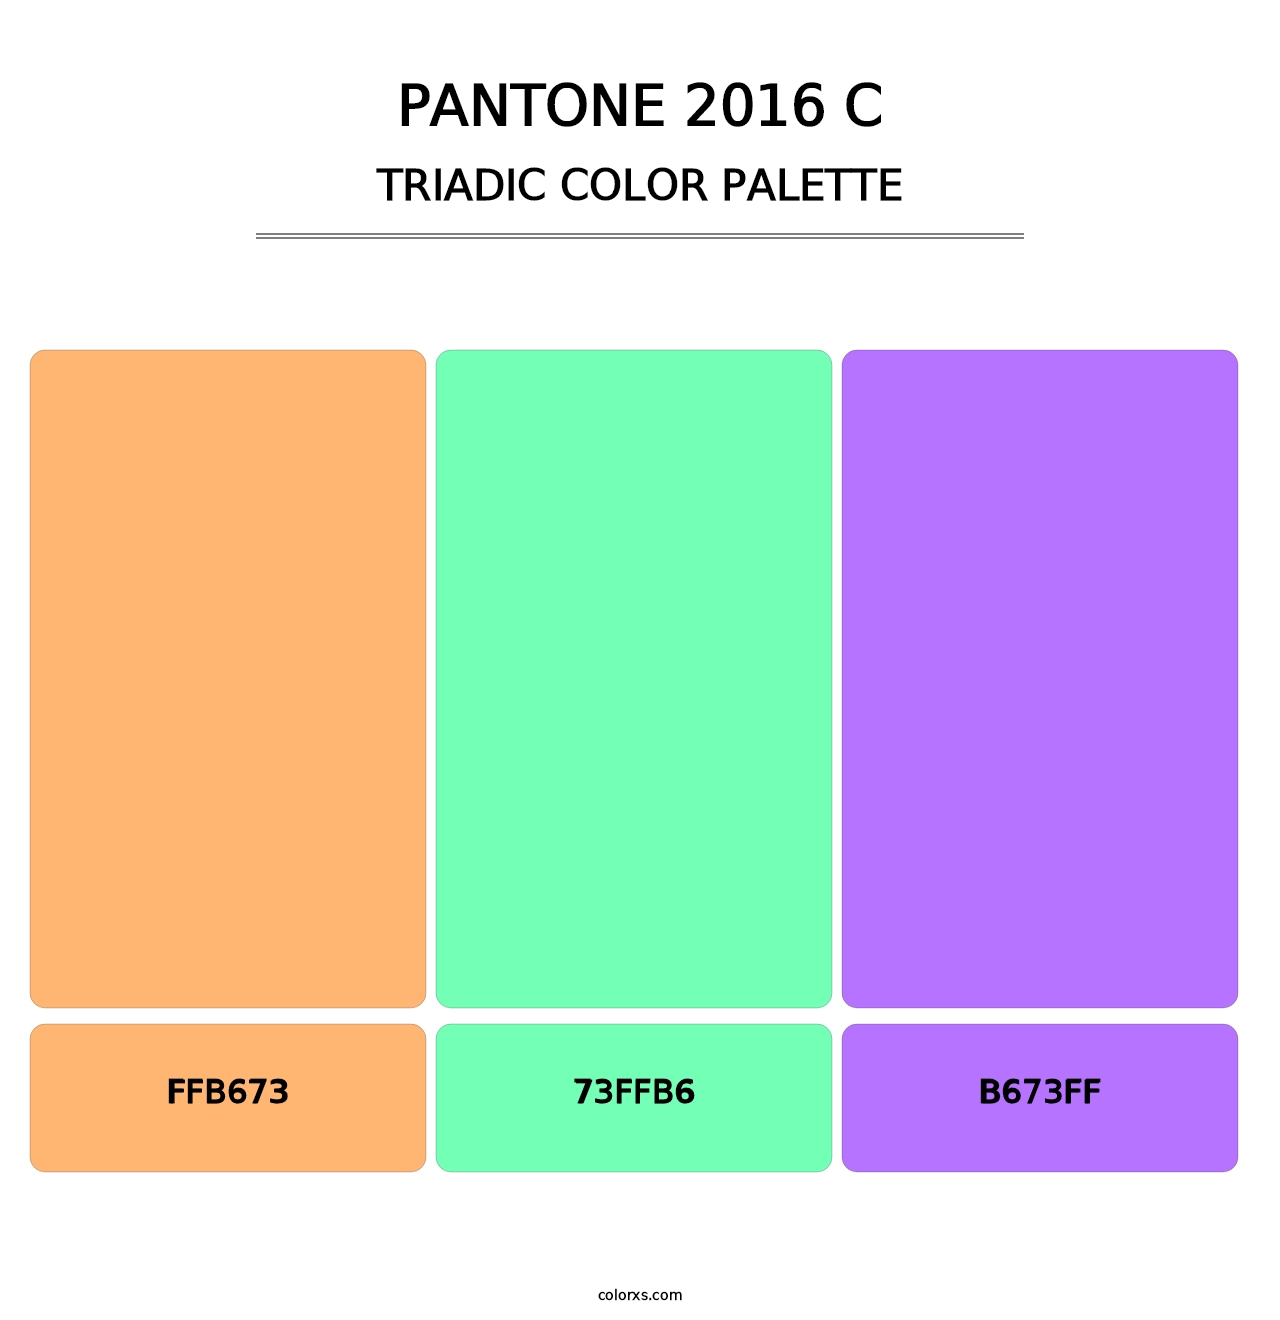 PANTONE 2016 C - Triadic Color Palette